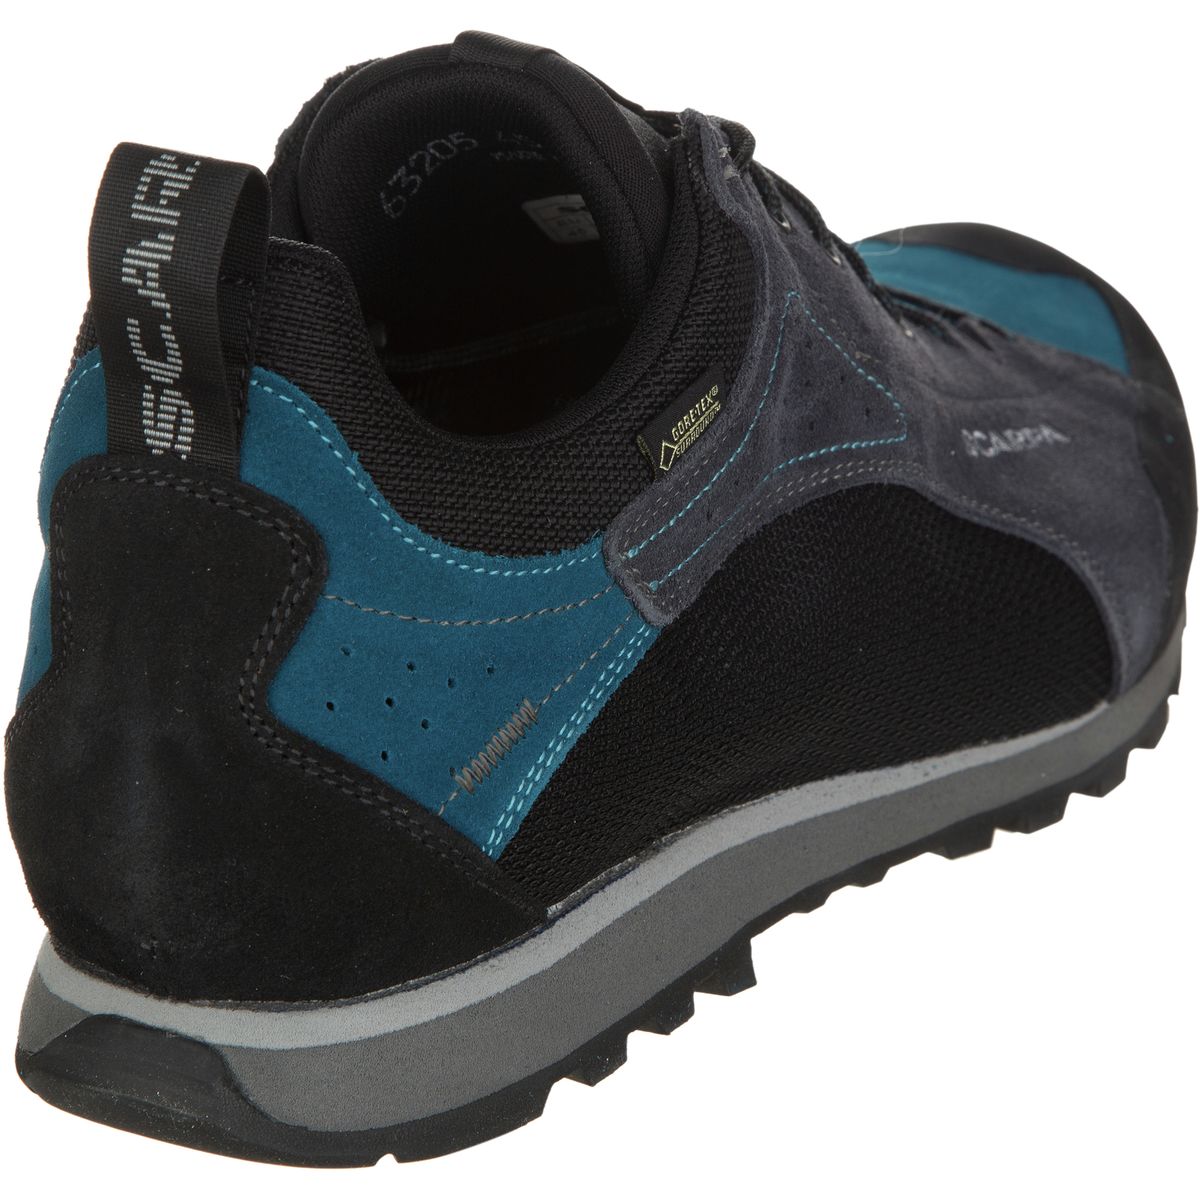 Scarpa Oxygen GTX Shoe - Men's - Footwear